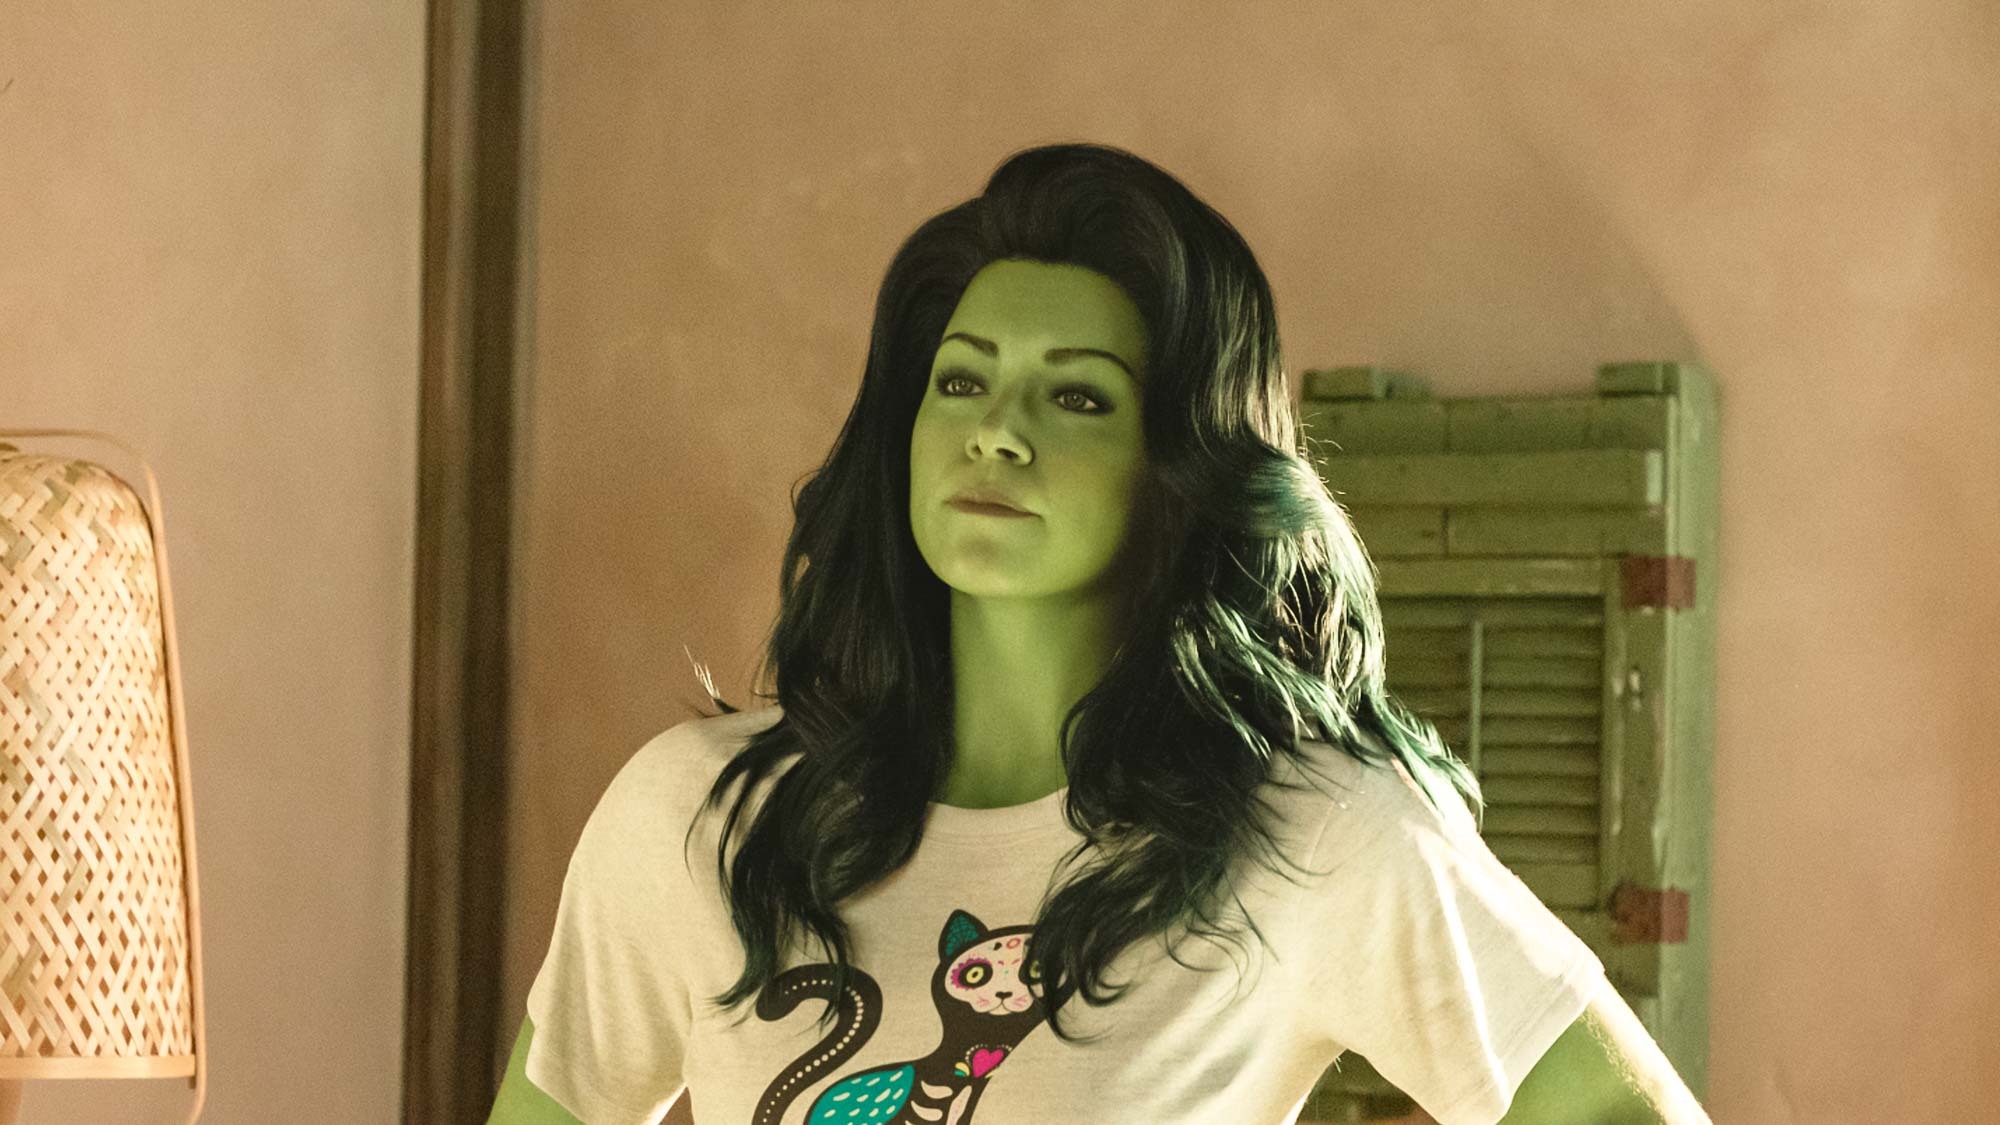 Marvel's She-Hulk: Trailer, Release Date, Cast